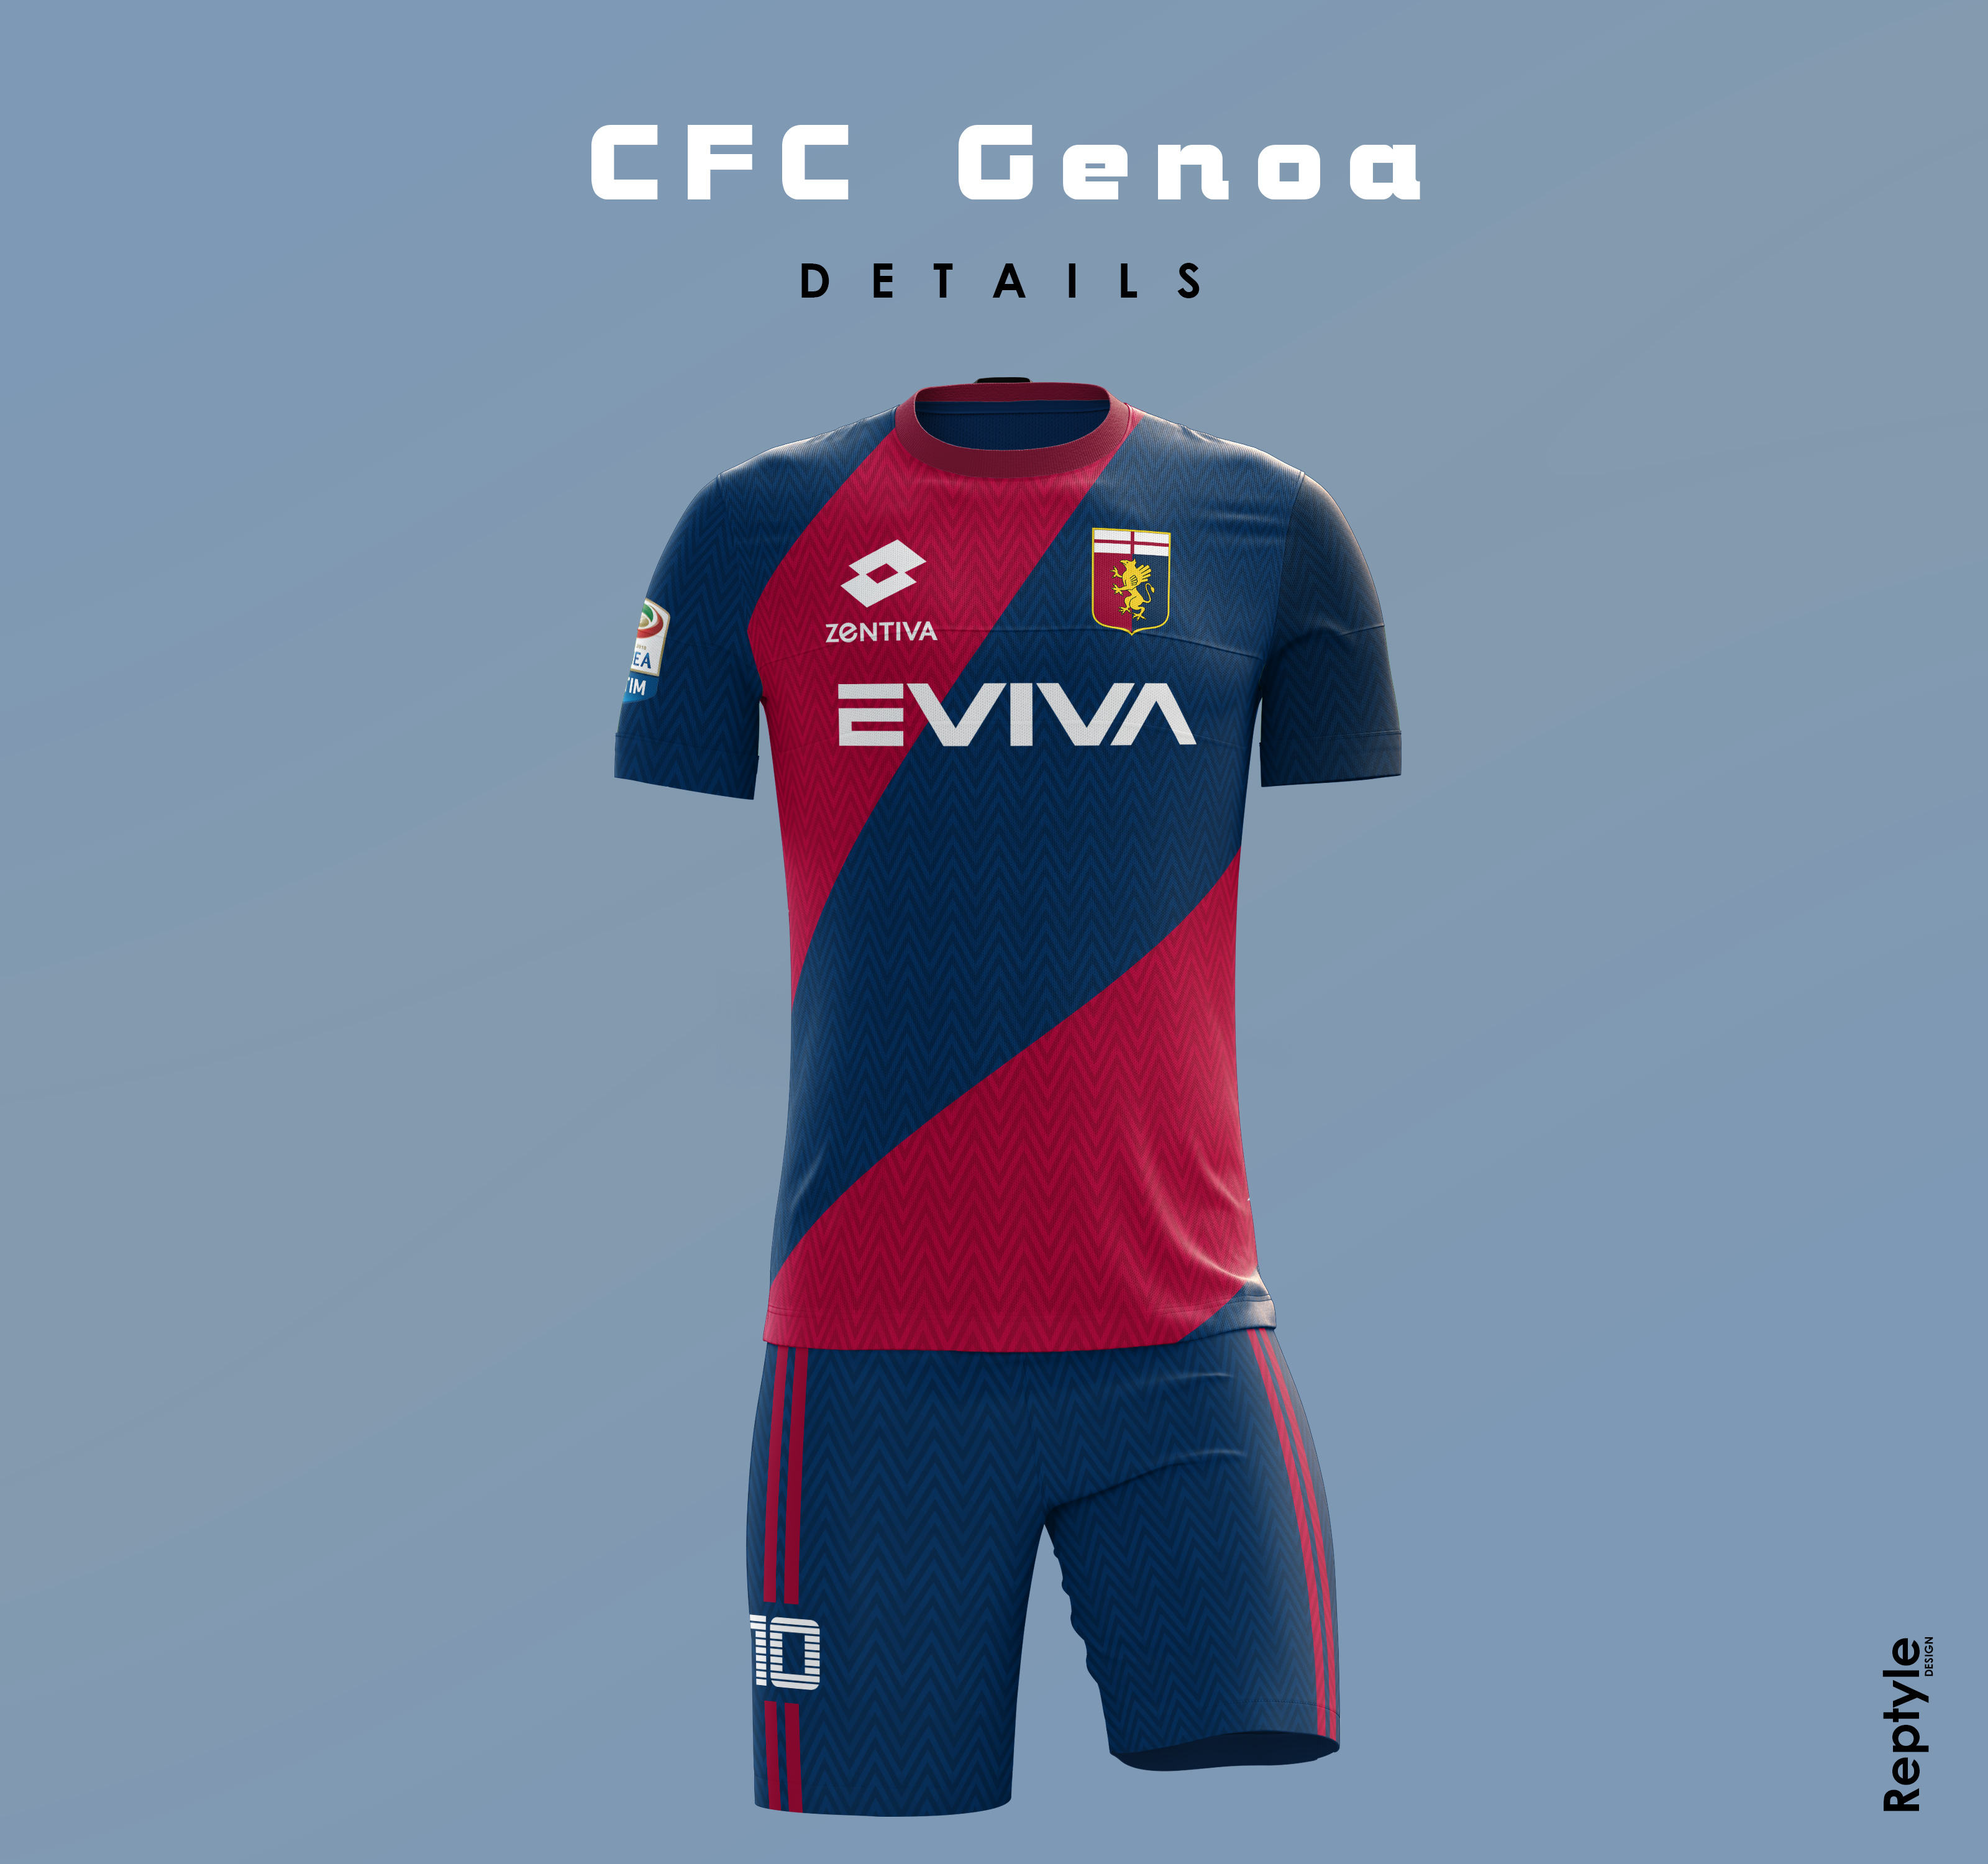 Genoa CFC x Castore concept - FIFA Kit Creator Showcase